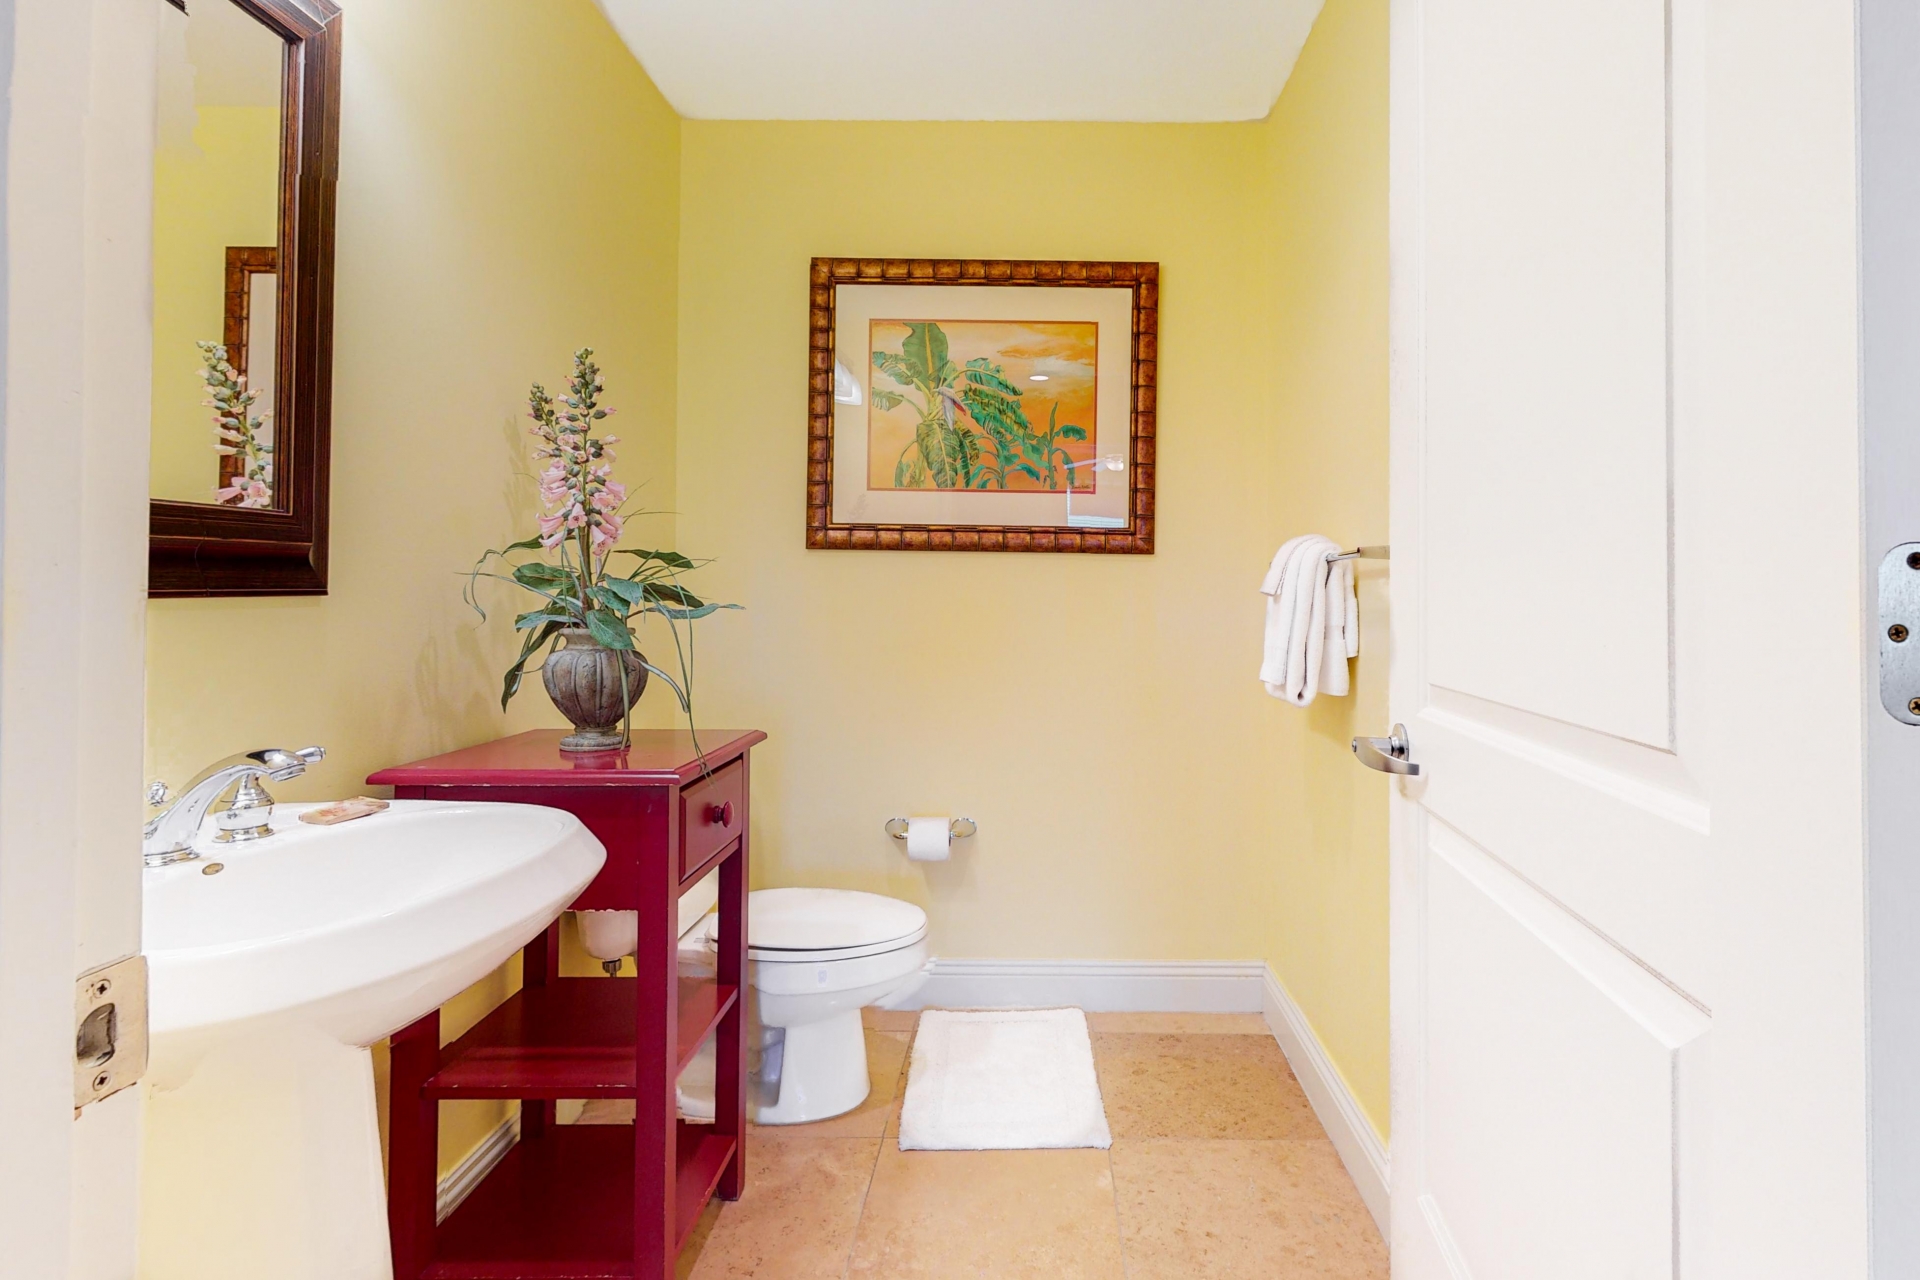 Không gian phòng tắm ẩm ướt thường mang lại cảm giác lạnh lẽo cho người sử dụng. Vì vậy khi bạn sơn mới bức tường bằng tone vàng nhạt, thêm chiếc tủ lưu trữ sắc đỏ mận thì phần ấm áp đã tăng hơn nhiều rồi!